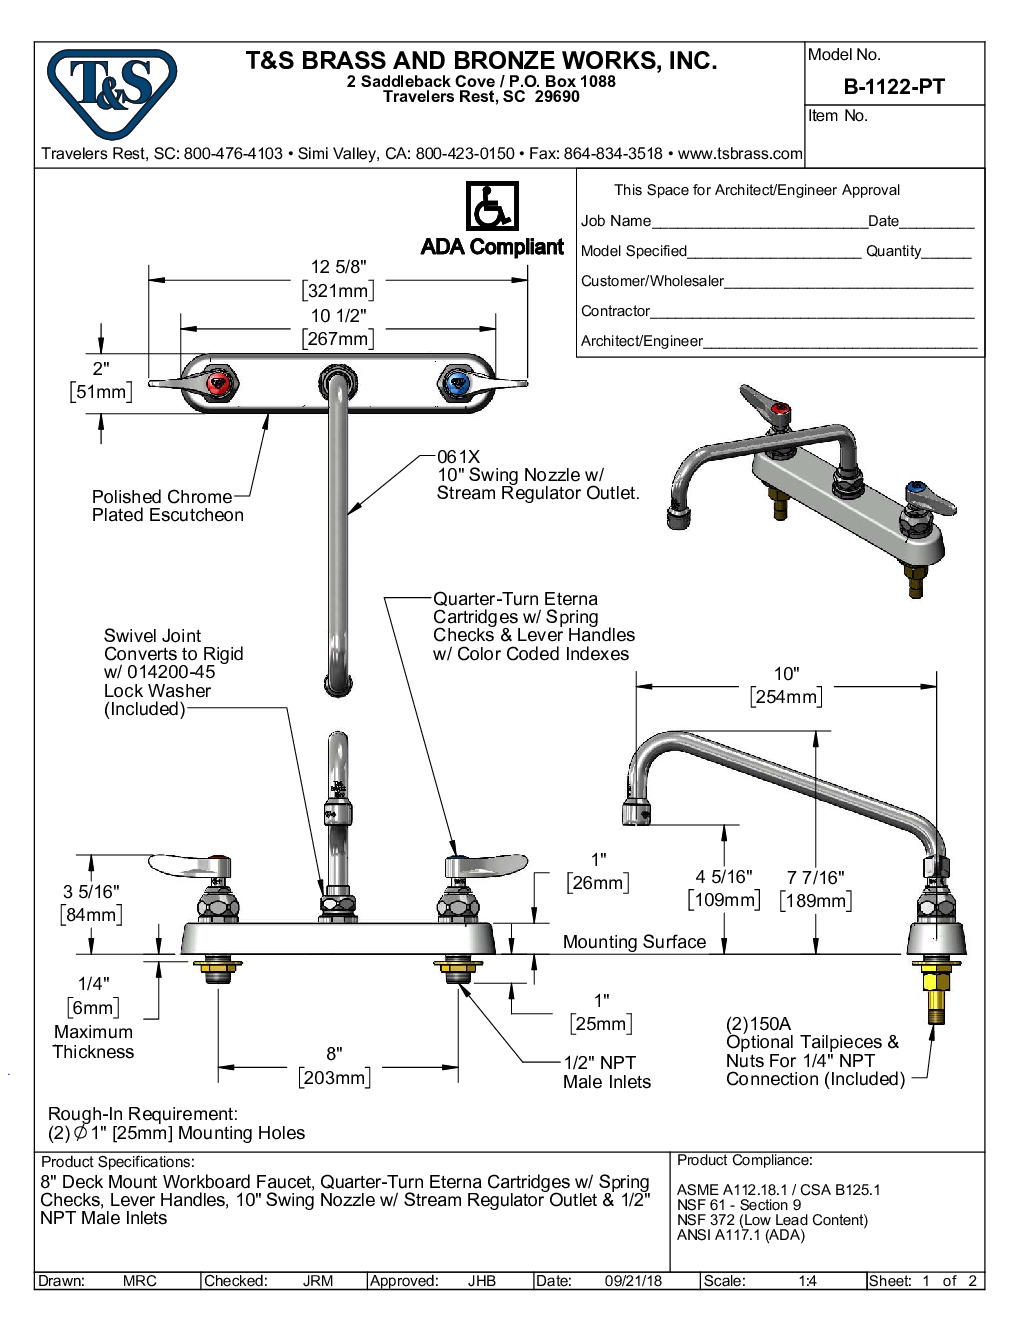 T&S Brass B-1122-PT Deck Mount Faucet